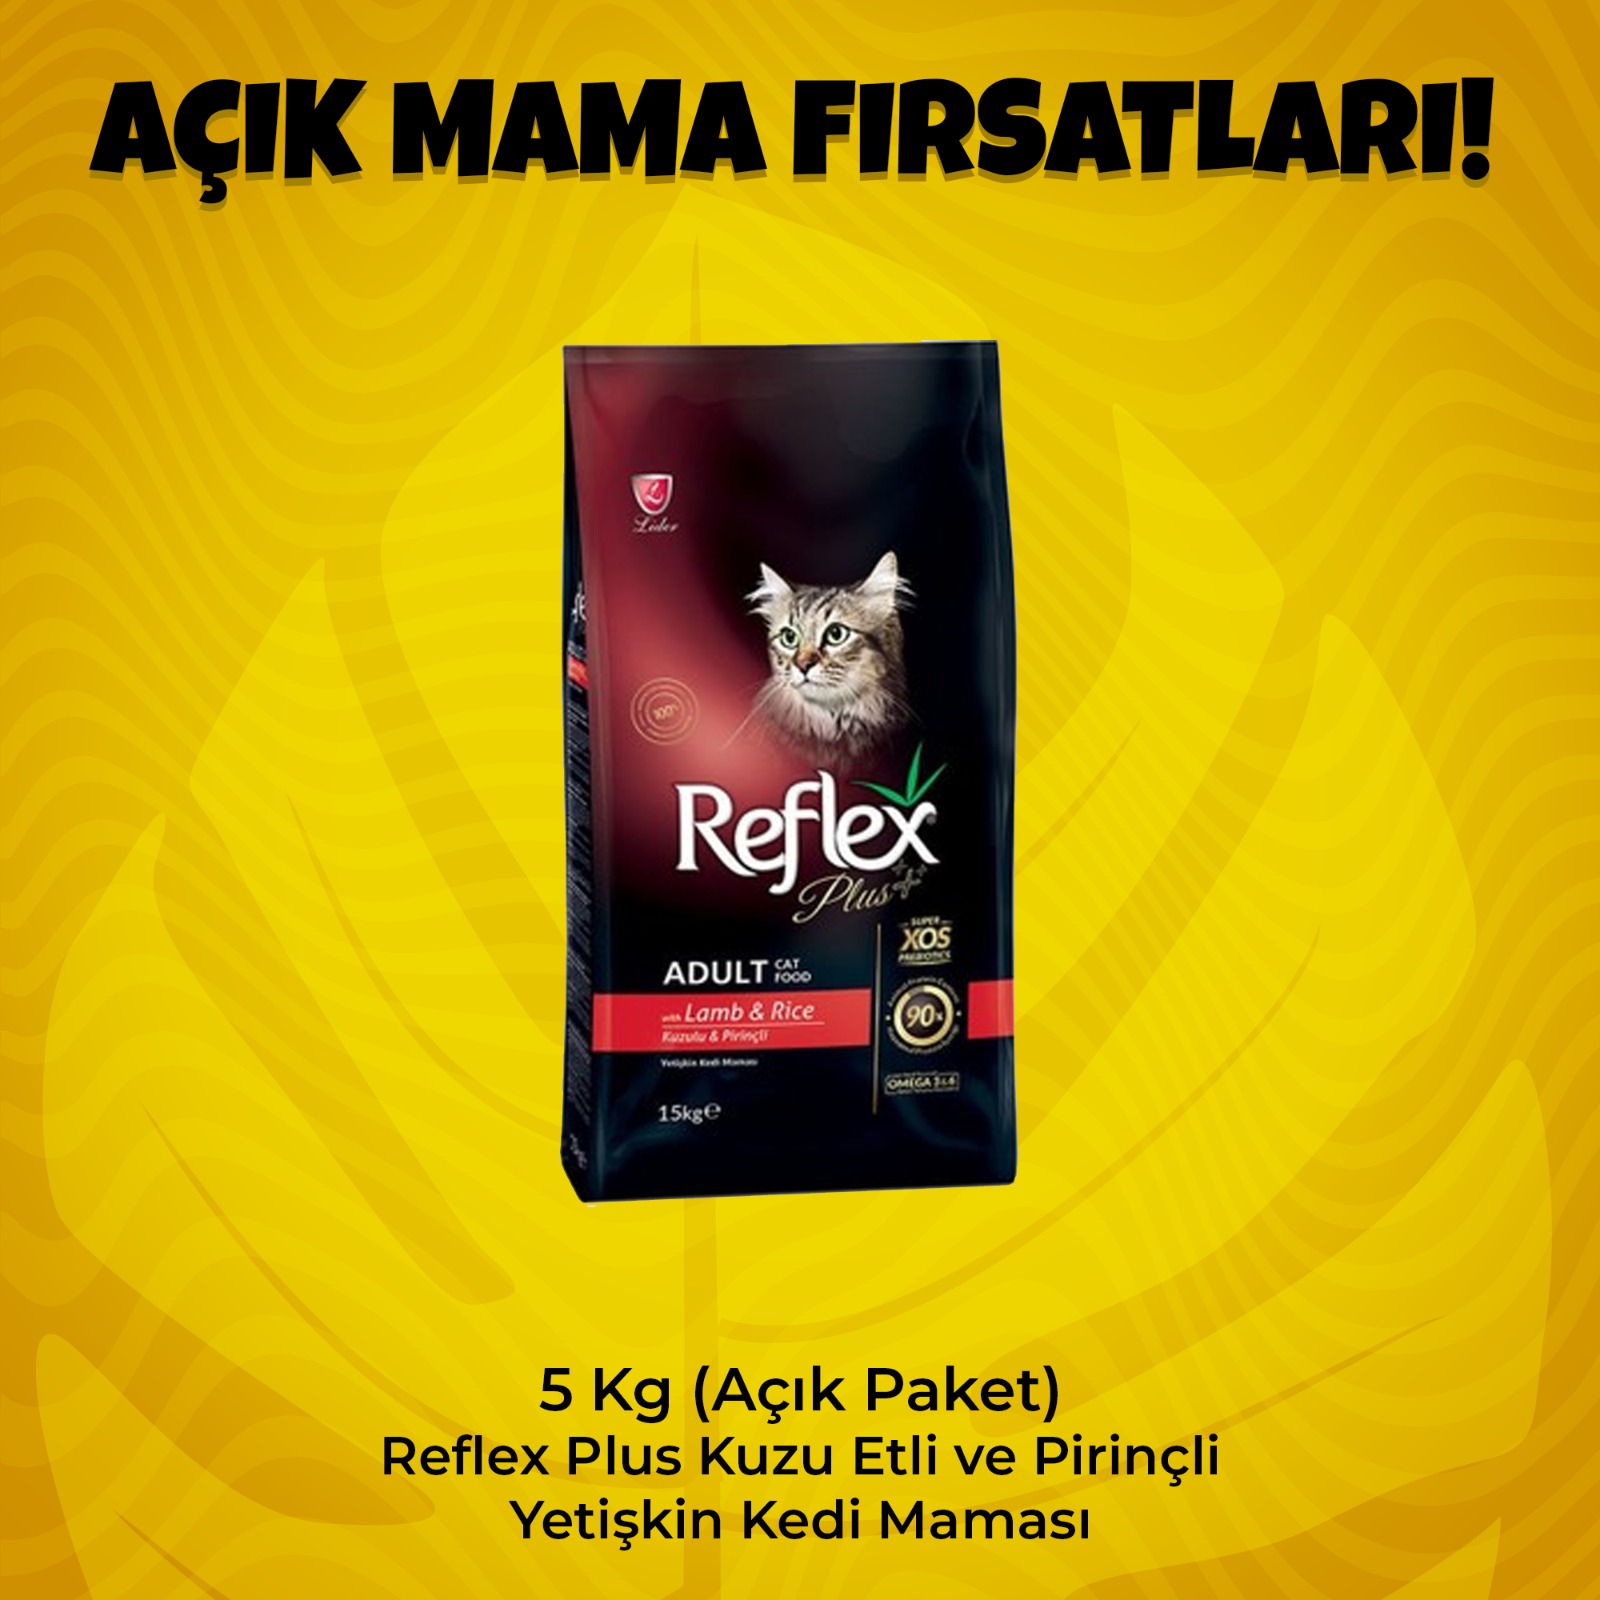 5 Kg (Açık Paket) Reflex Plus Kuzu Etli ve Pirinçli Yetişkin Kedi Maması